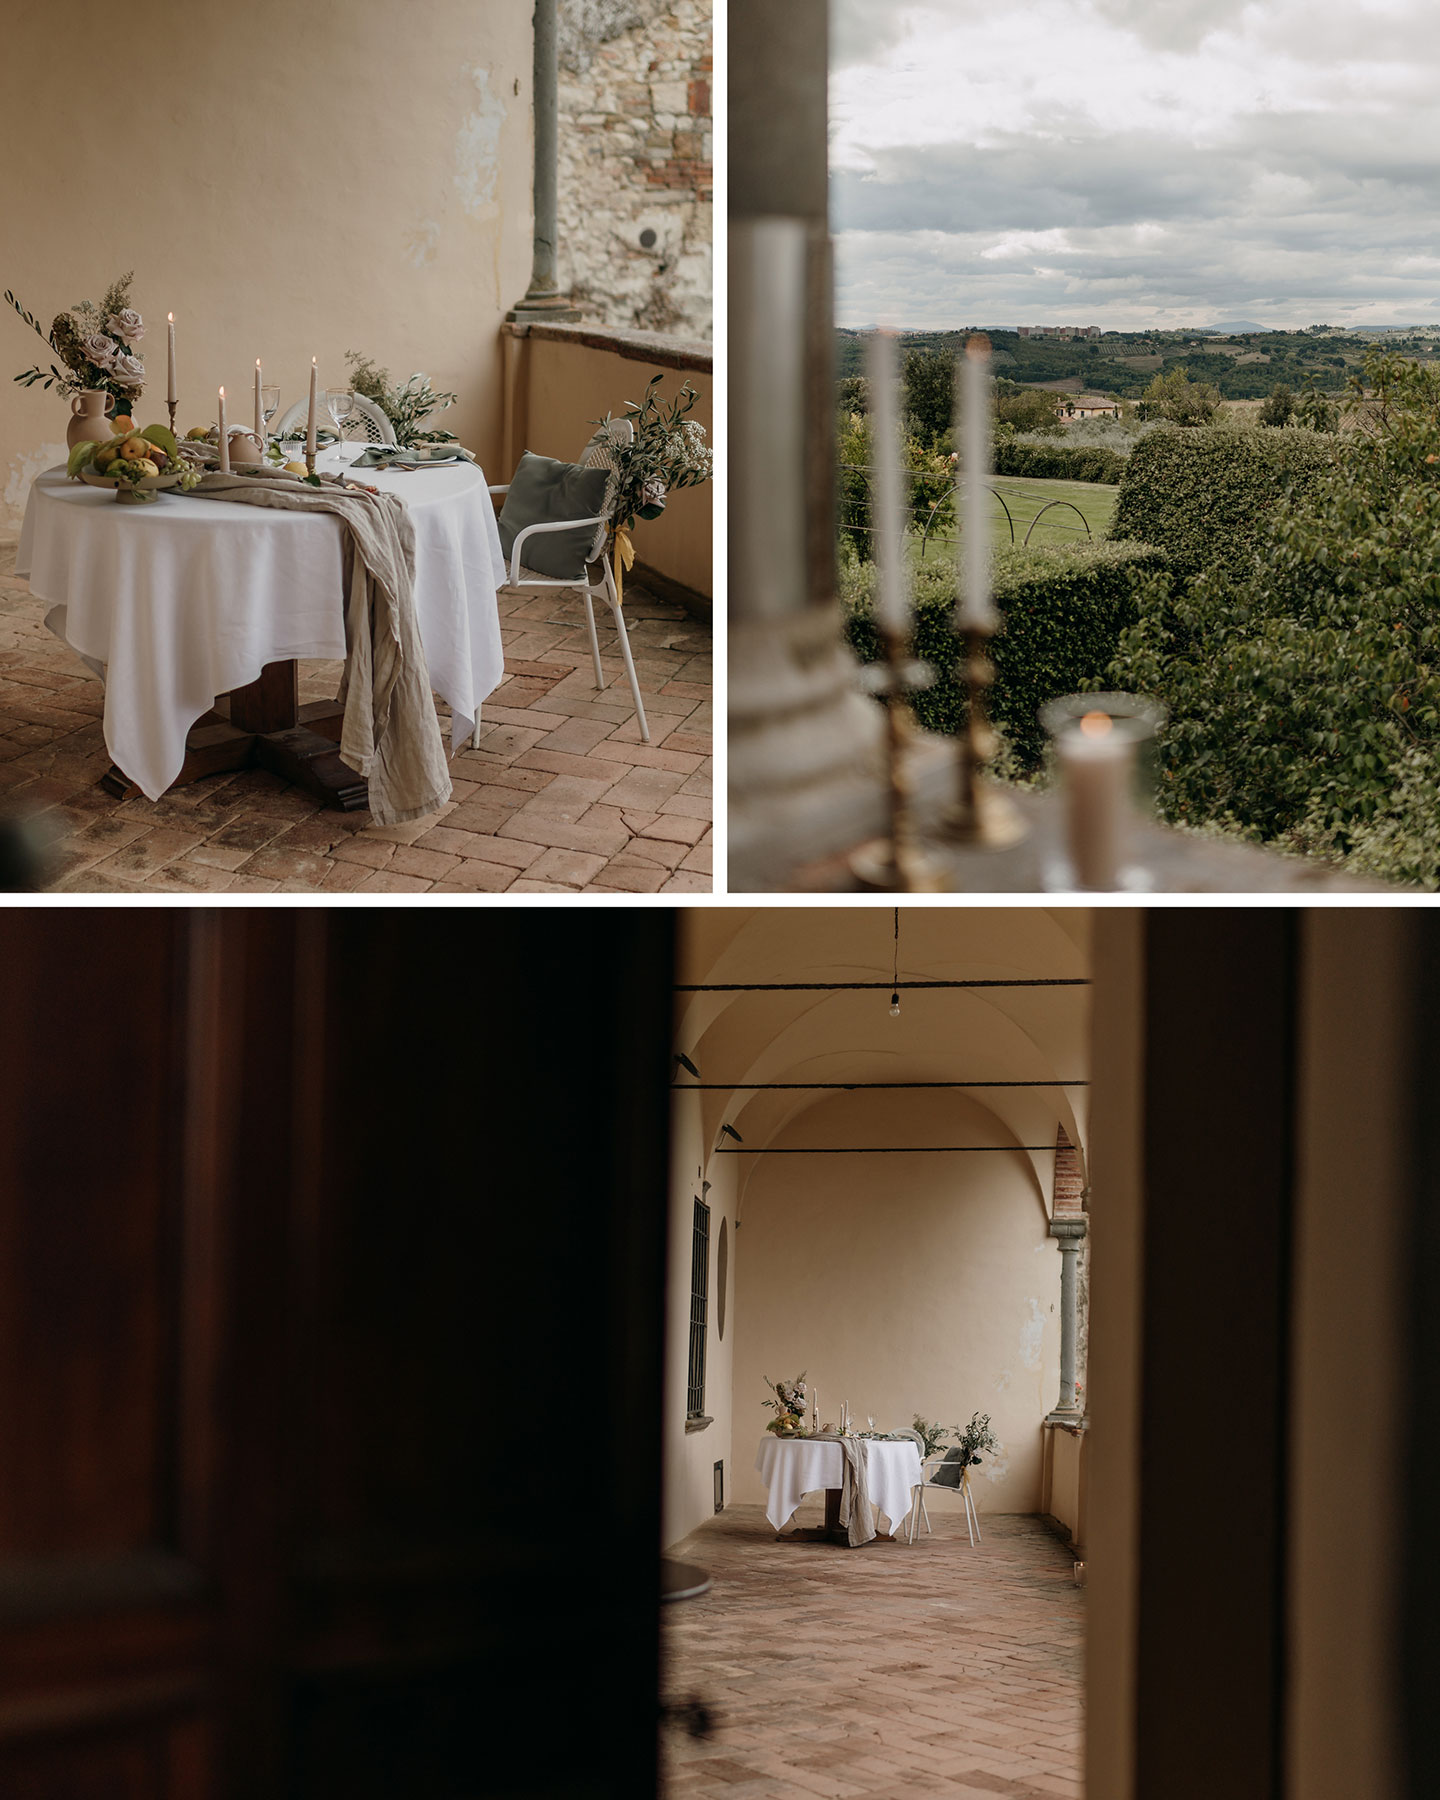 Die Hochzeitslocation ist ein rustikales Gebäude in der italienischen Toskana. Der gedeckte Hochzeitstisch sowie Blumendekoration und Kerzen sind zu sehen. Der Ausblick geht in die grüne Natur.